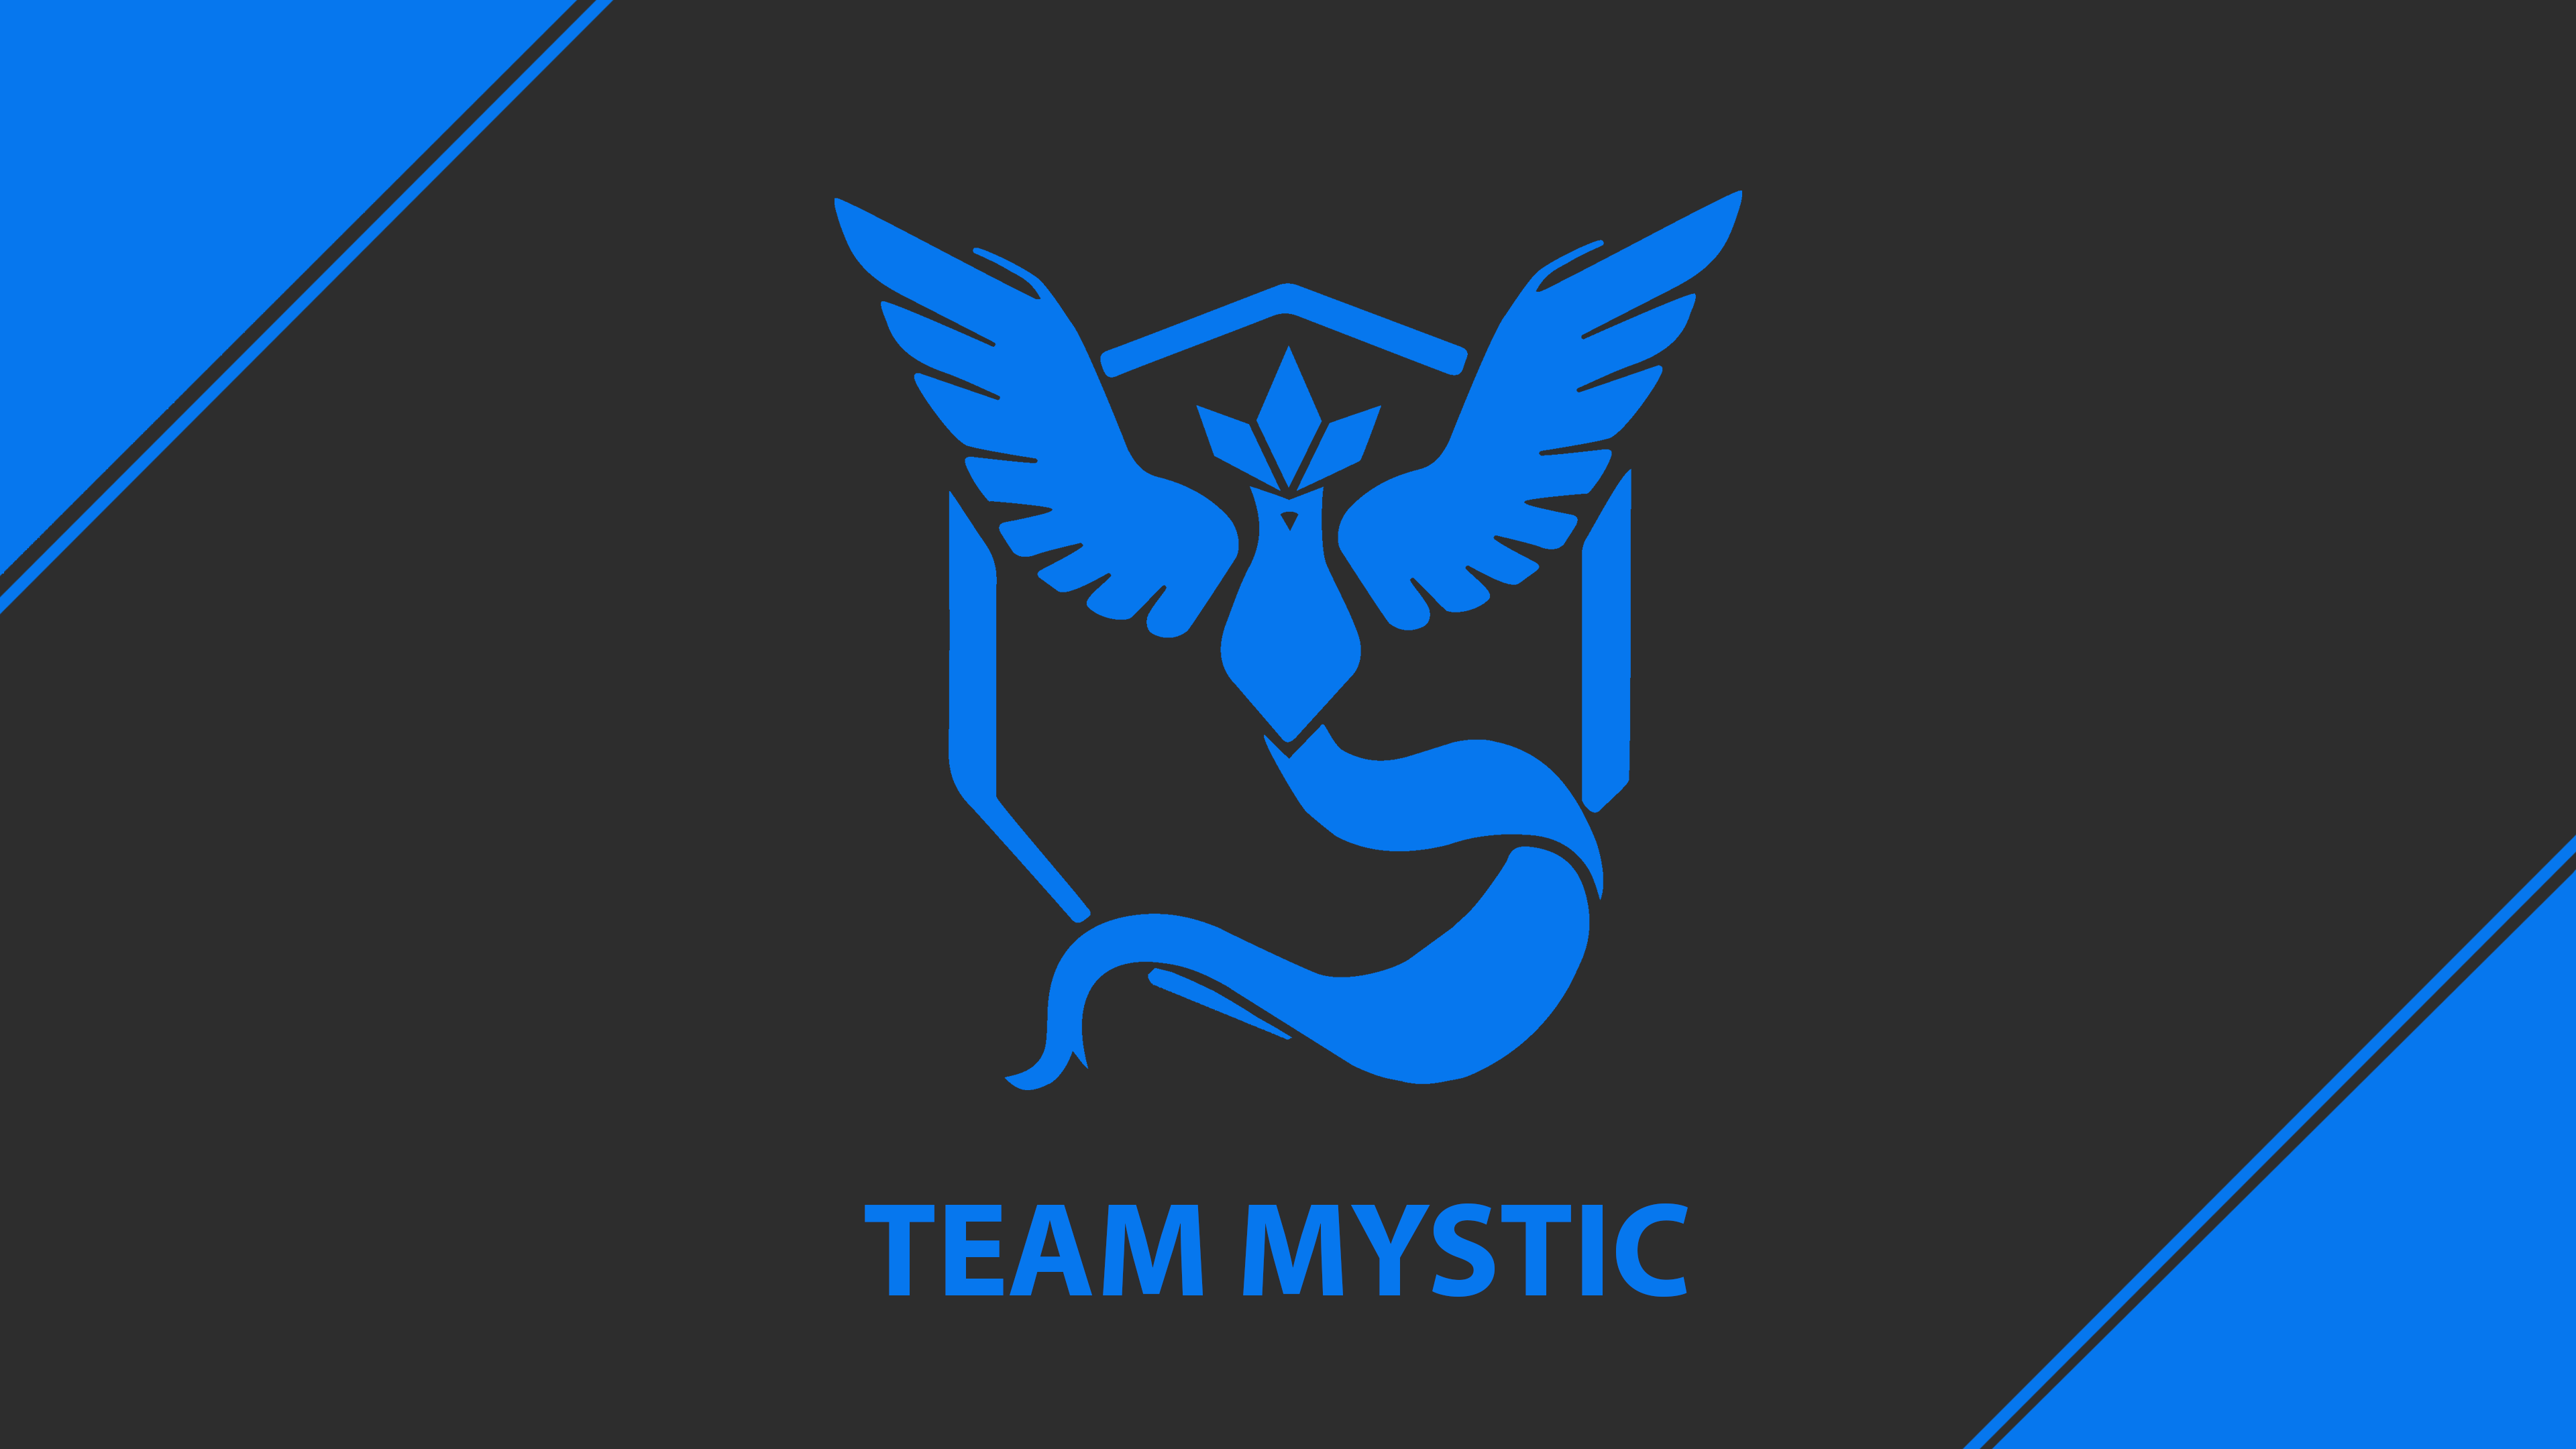 squadra mistica live wallpaper,emblema,grafica,font,blu elettrico,simbolo